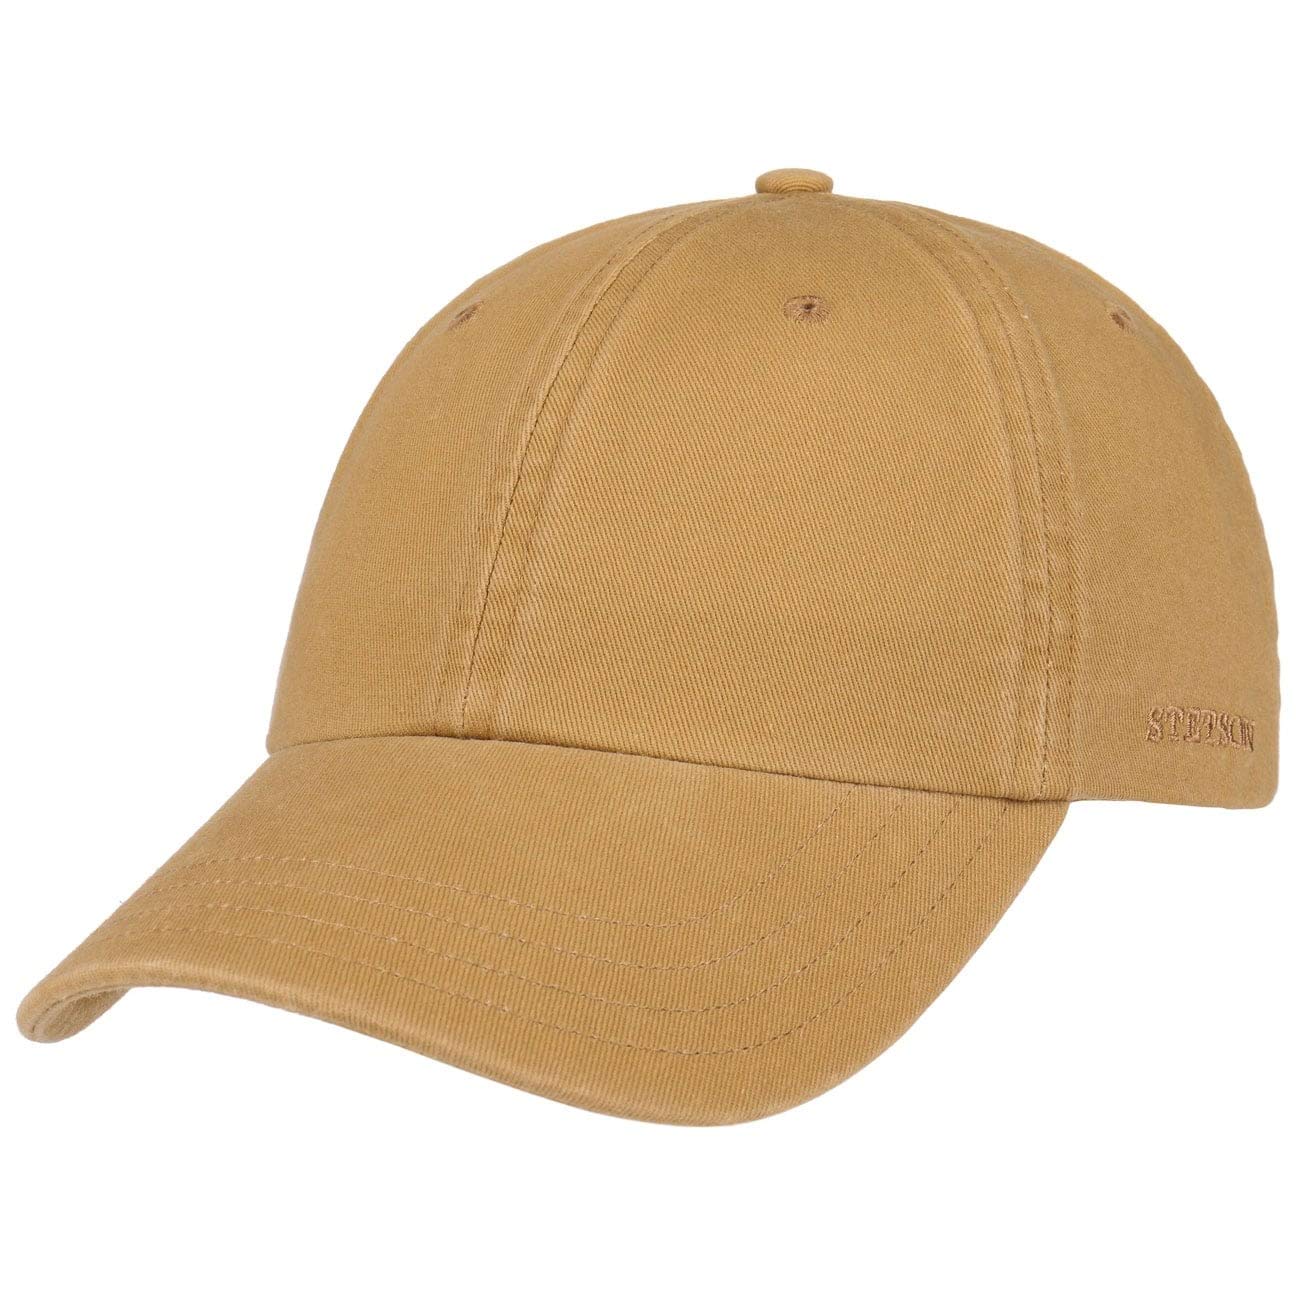 Stetson Rector Basecap - Cap für Damen/Herren - Sonnenschutz-Cap aus Baumwolle (UV-Schutz 40+) - Baumwollcap größenverstellbar (55-60 cm) - Baseballcap Sommer/Winter beige One Size